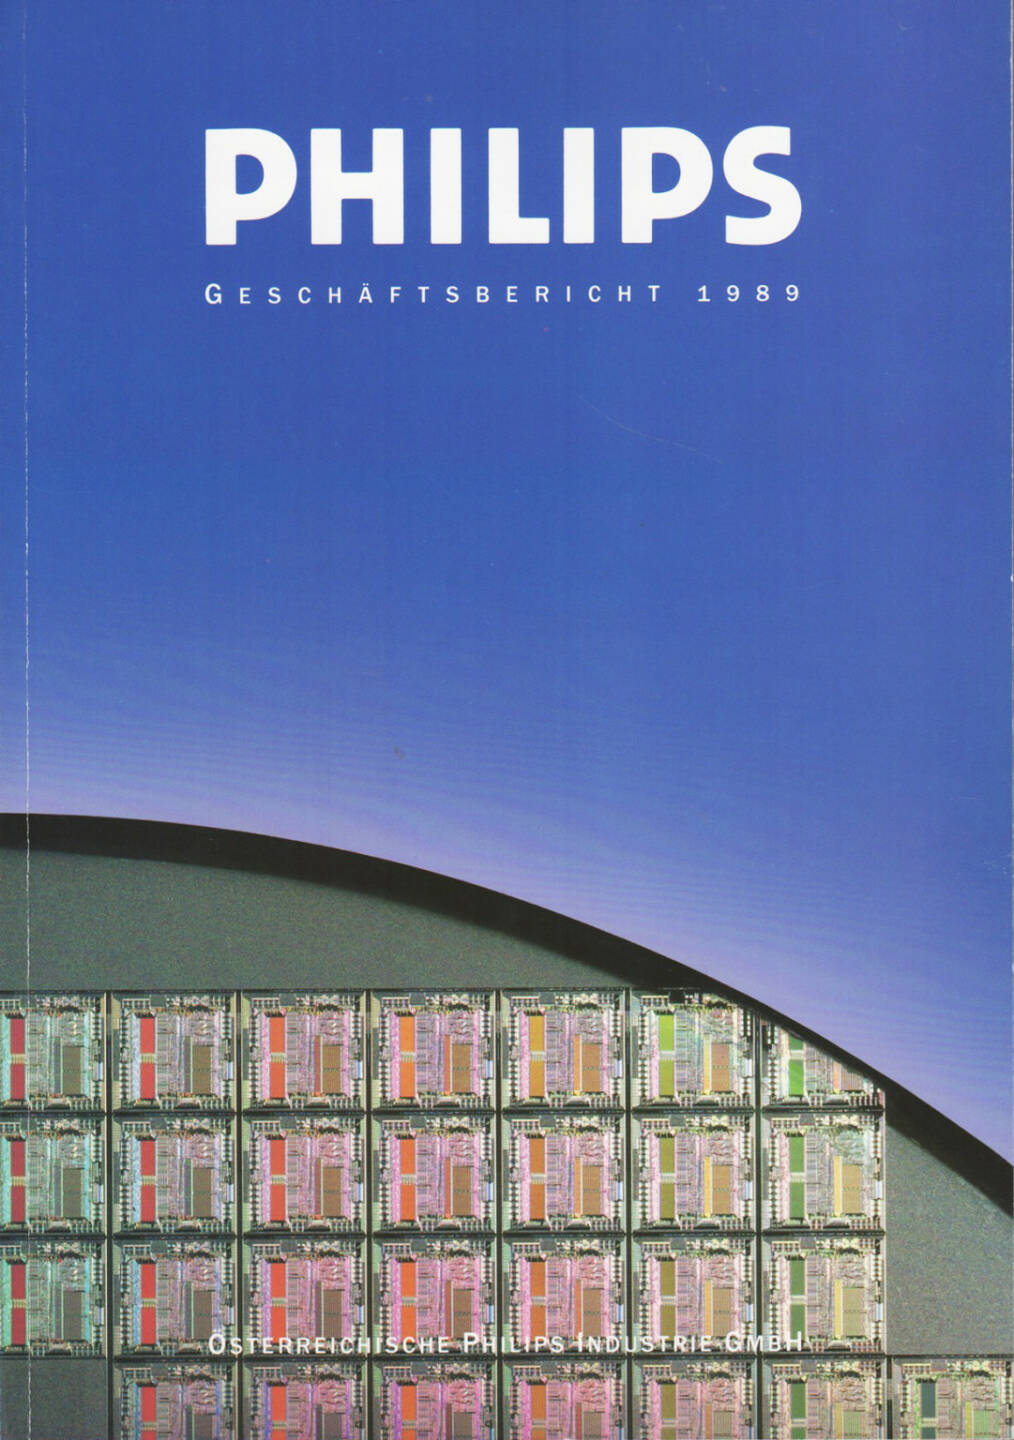 Österreichische Philips Industrie GmbH Geschäftsbericht 1989 - http://boerse-social.com/financebooks/show/osterreichische_philips_industrie_gmbh_geschaftsbericht_1989